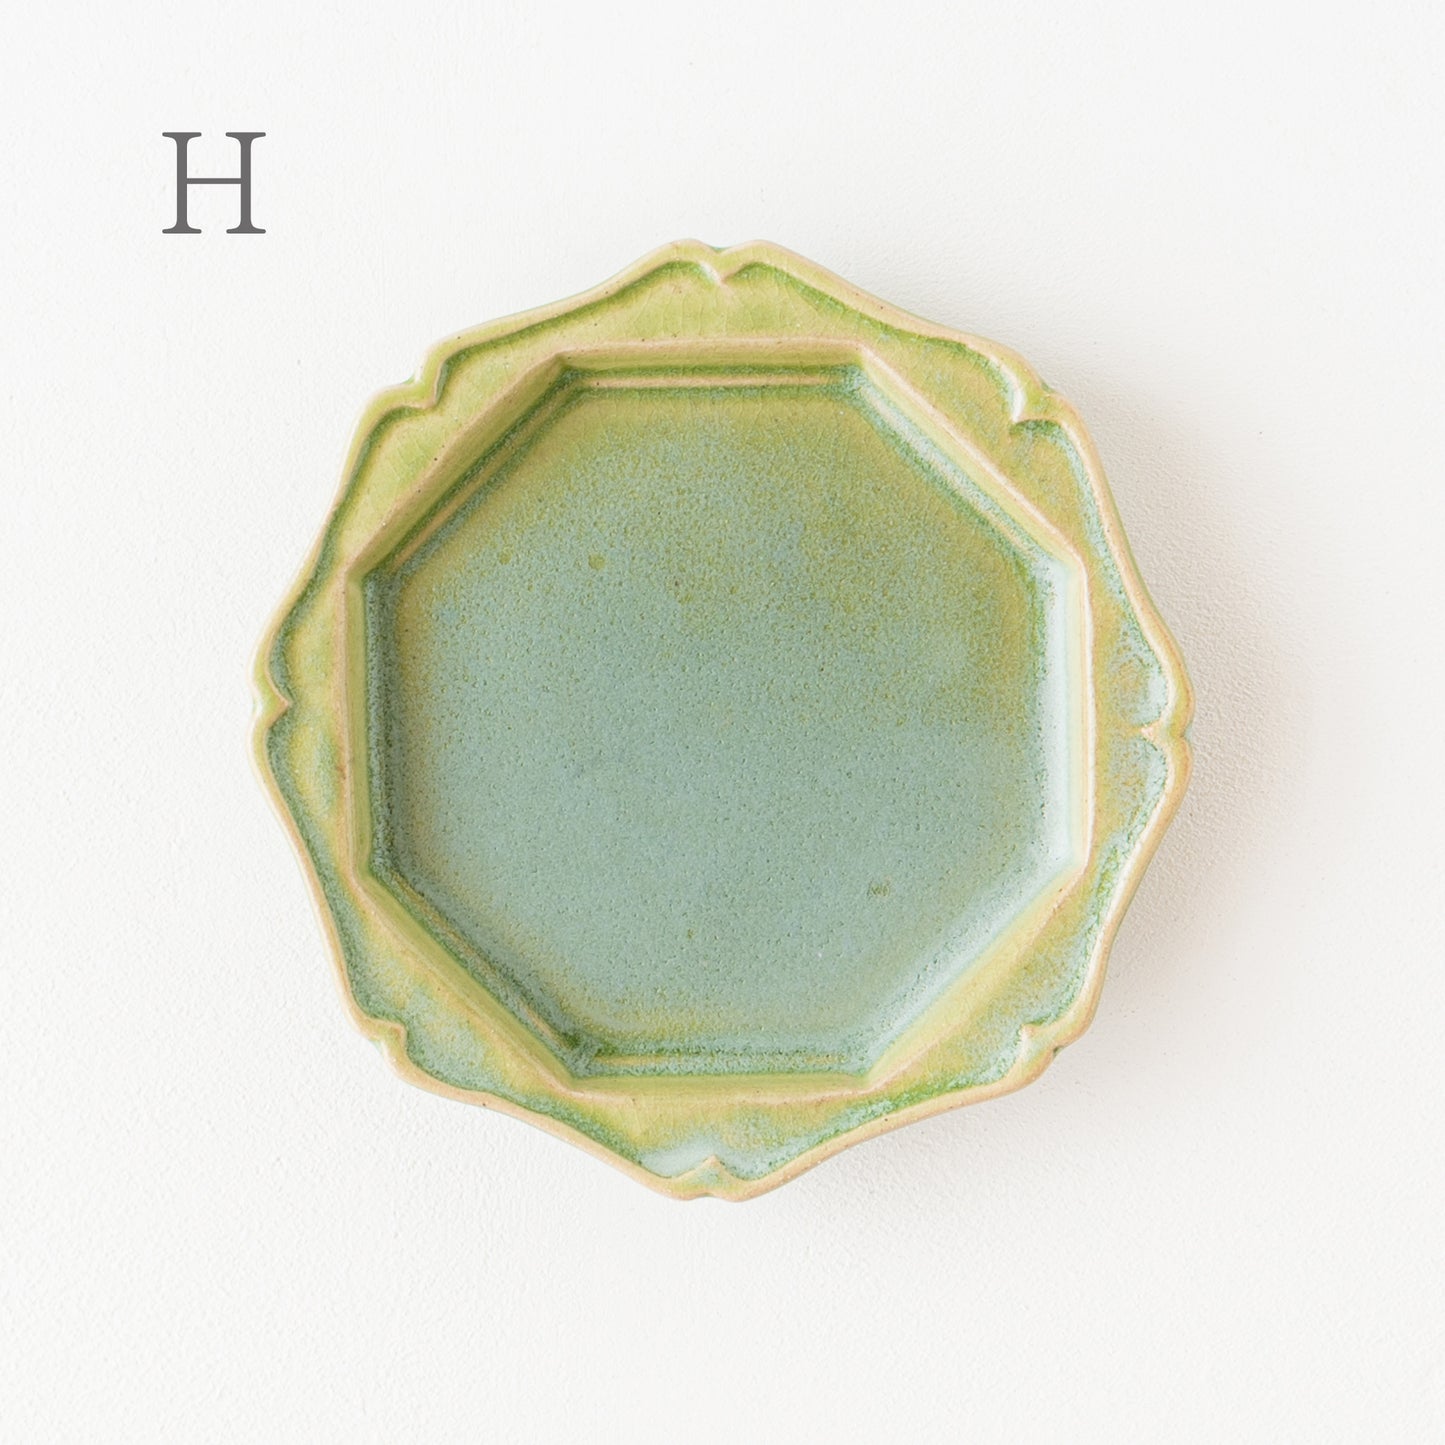 個性豊かな山葵釉が素敵な渡辺信史さんのねじり八角皿